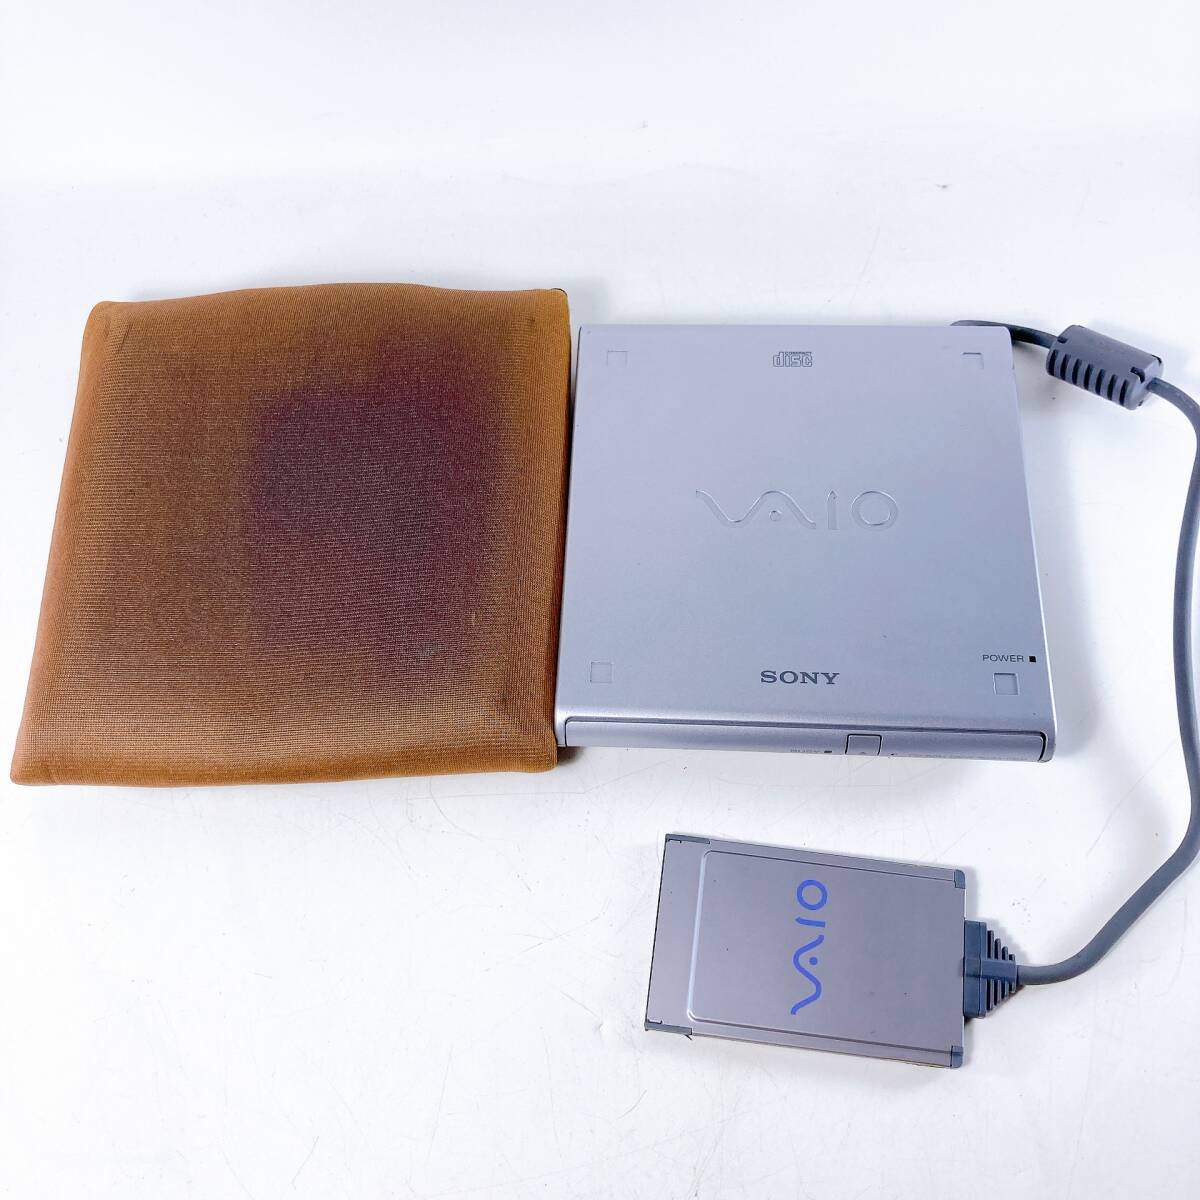 【ジャンク】SONY ソニー VAIO CD-ROMドライブ PCGA-CD51 PCカード接続 ソフトケース付の画像1